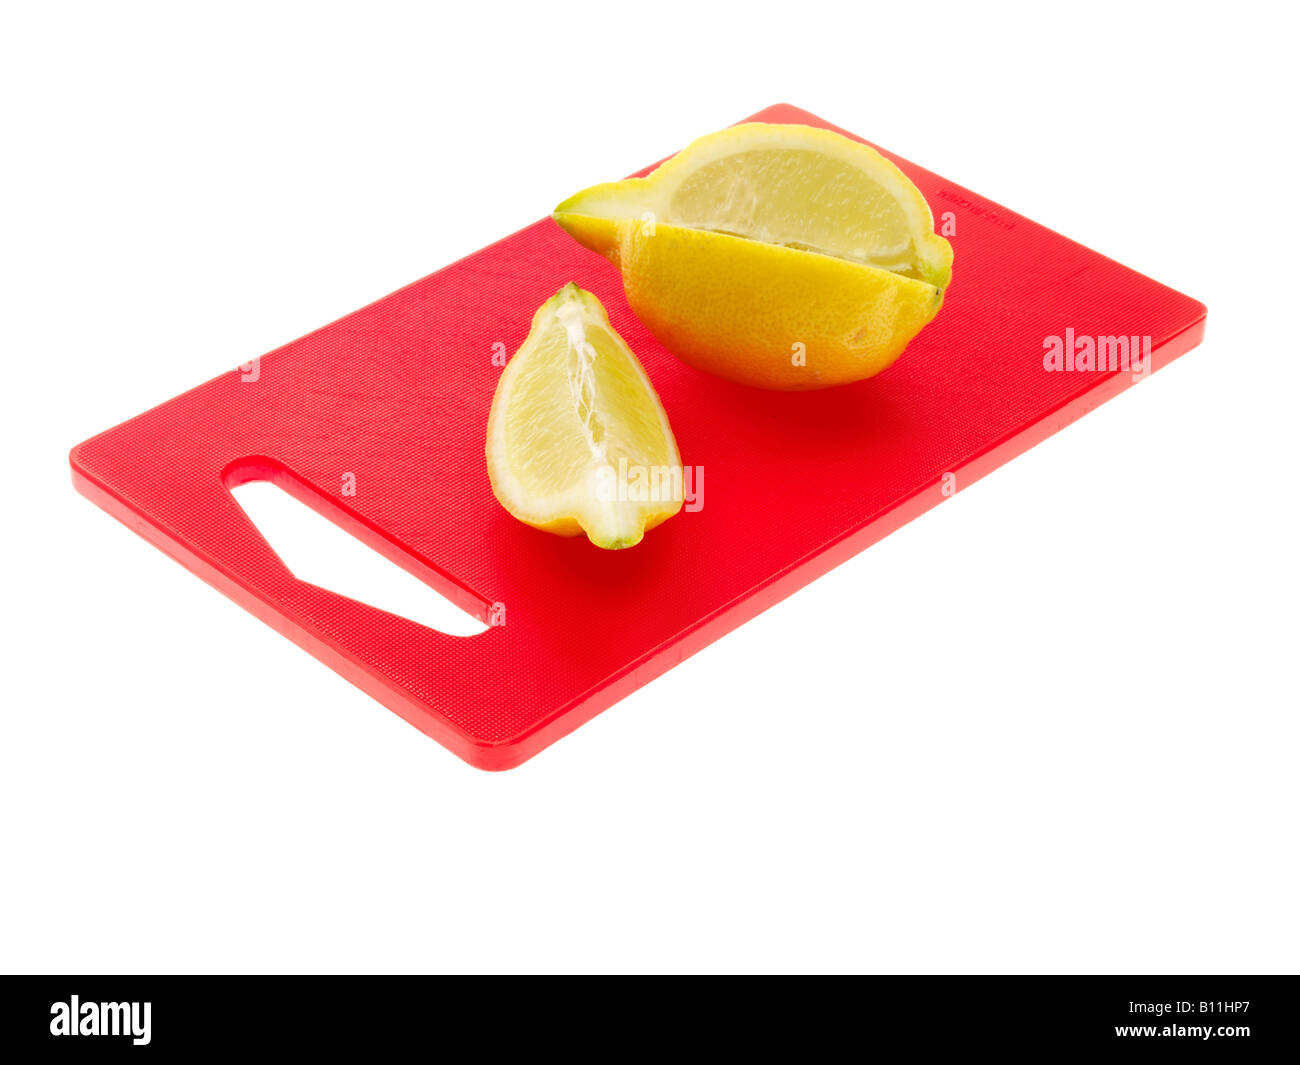 Fresco saludable fruta madura limón amarillo aisladas contra un fondo blanco con ningún pueblo y un trazado de recorte Foto de stock